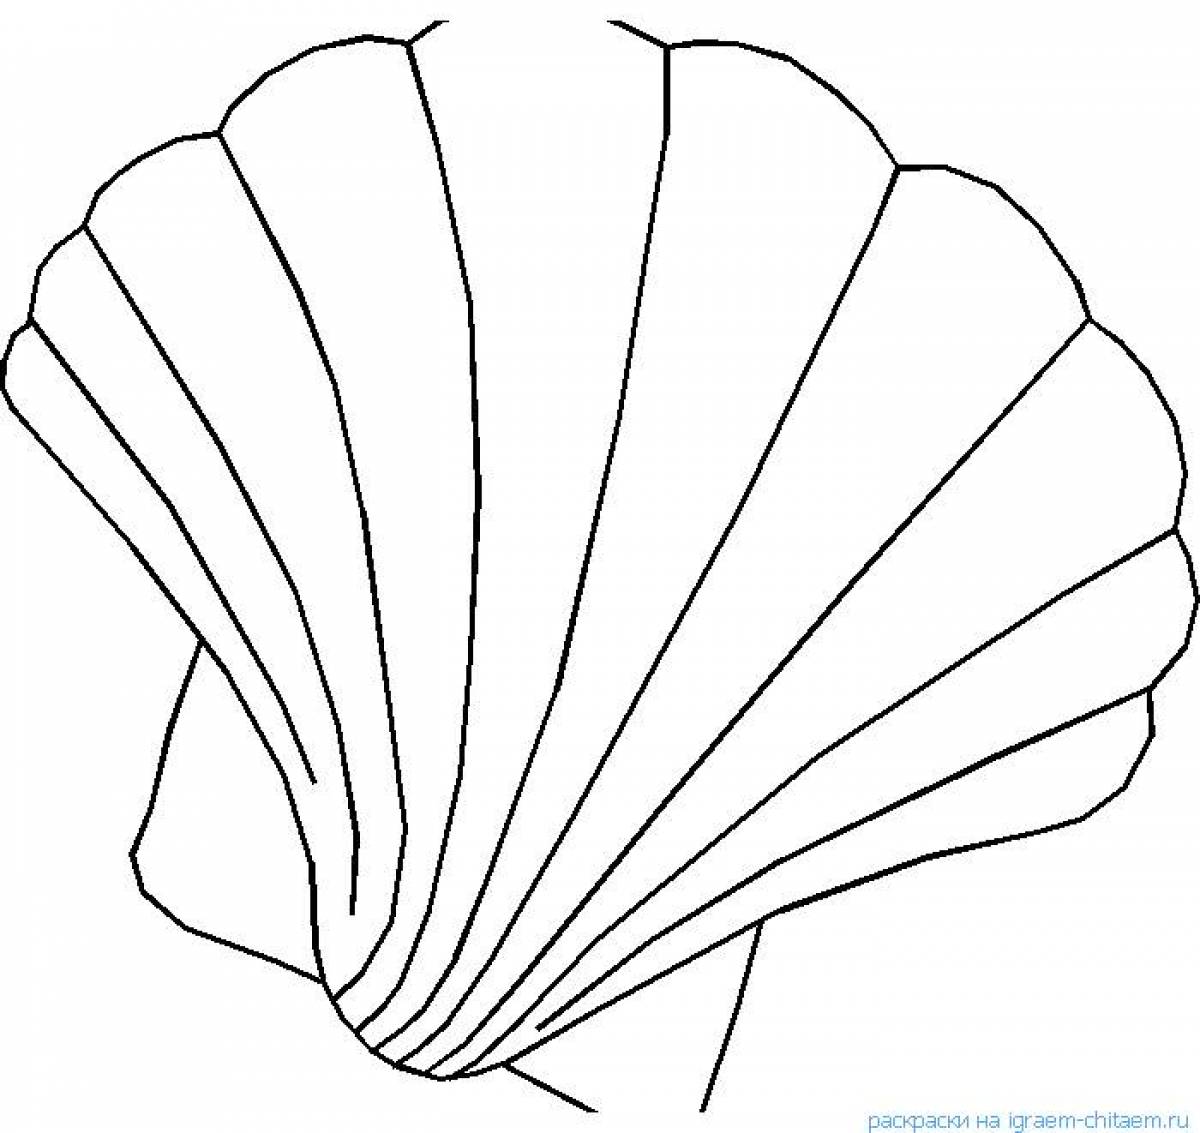 Fan shell